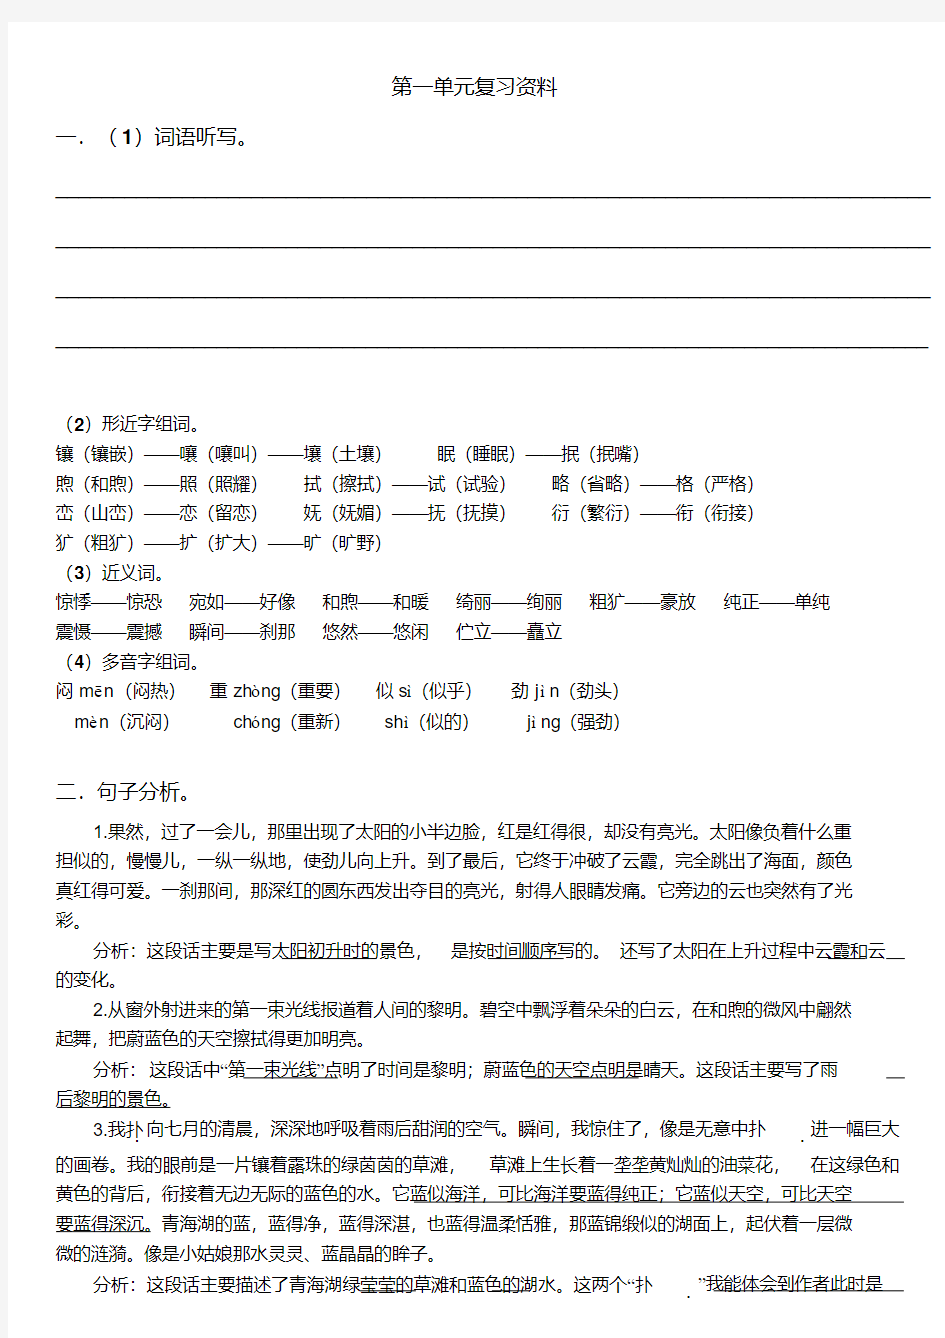 五年级下册语文同步资料.pdf